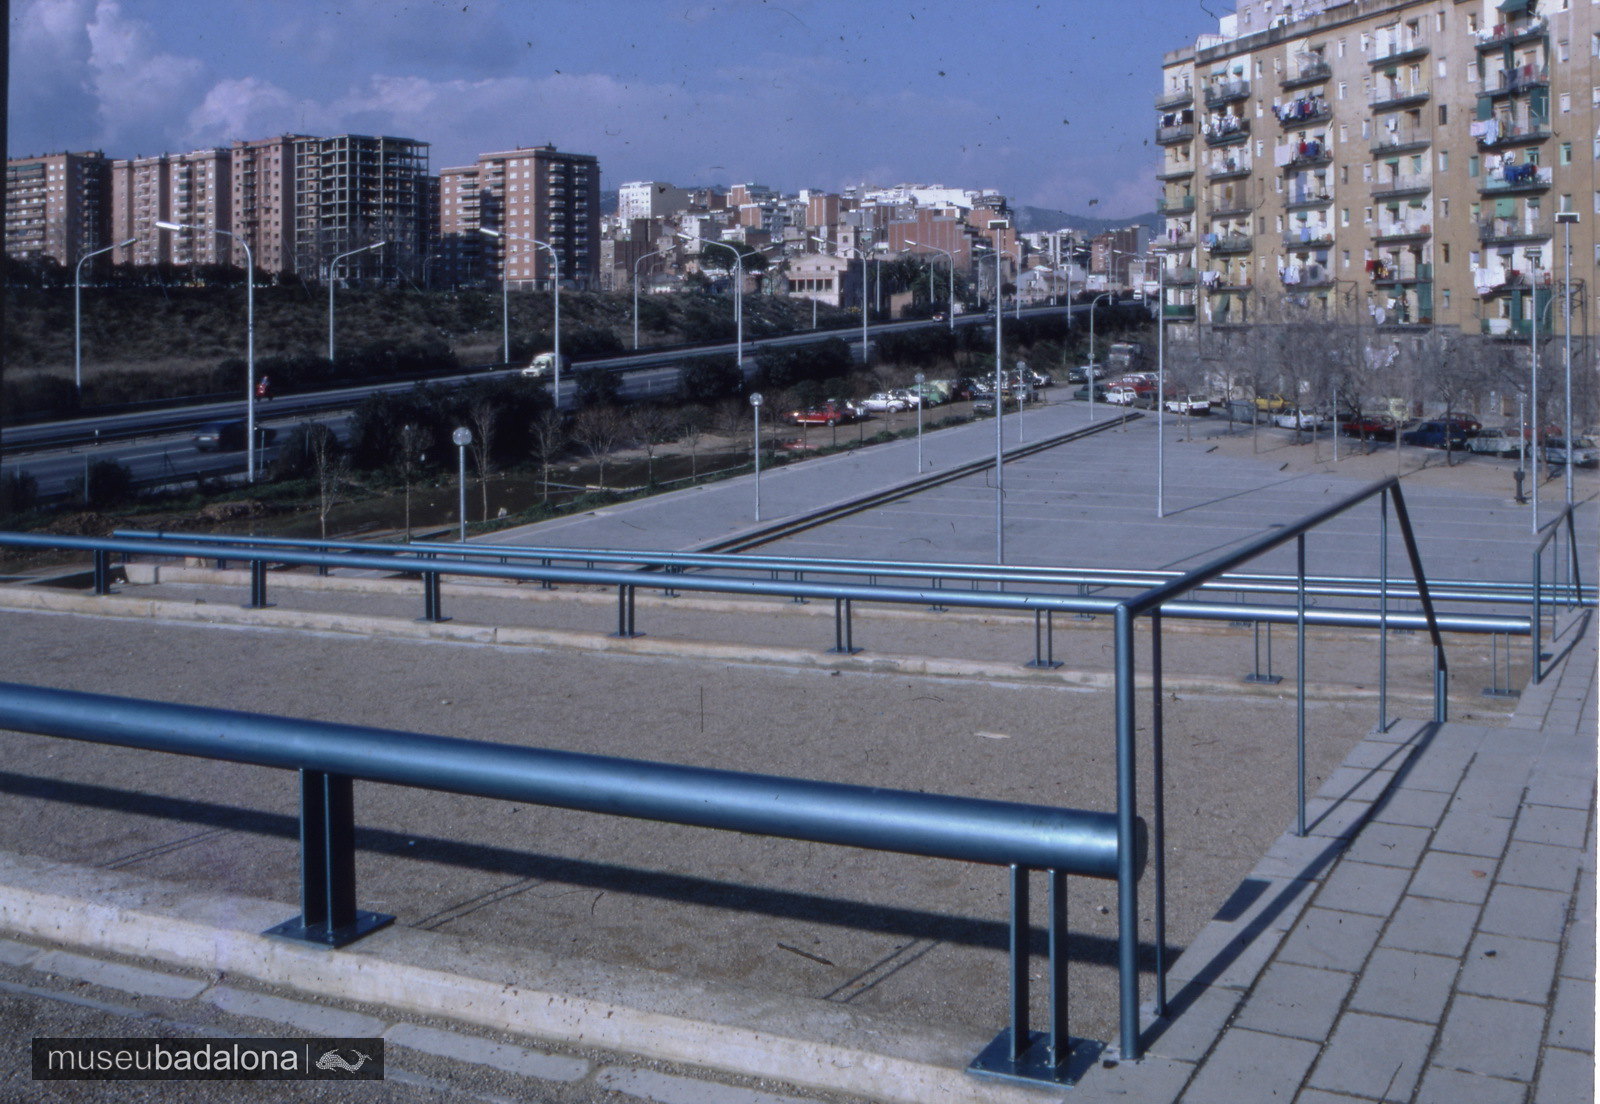 Diapositives del fons de l’Ajuntament de Badalona: obres i canvis urbanístics als anys vuitanta